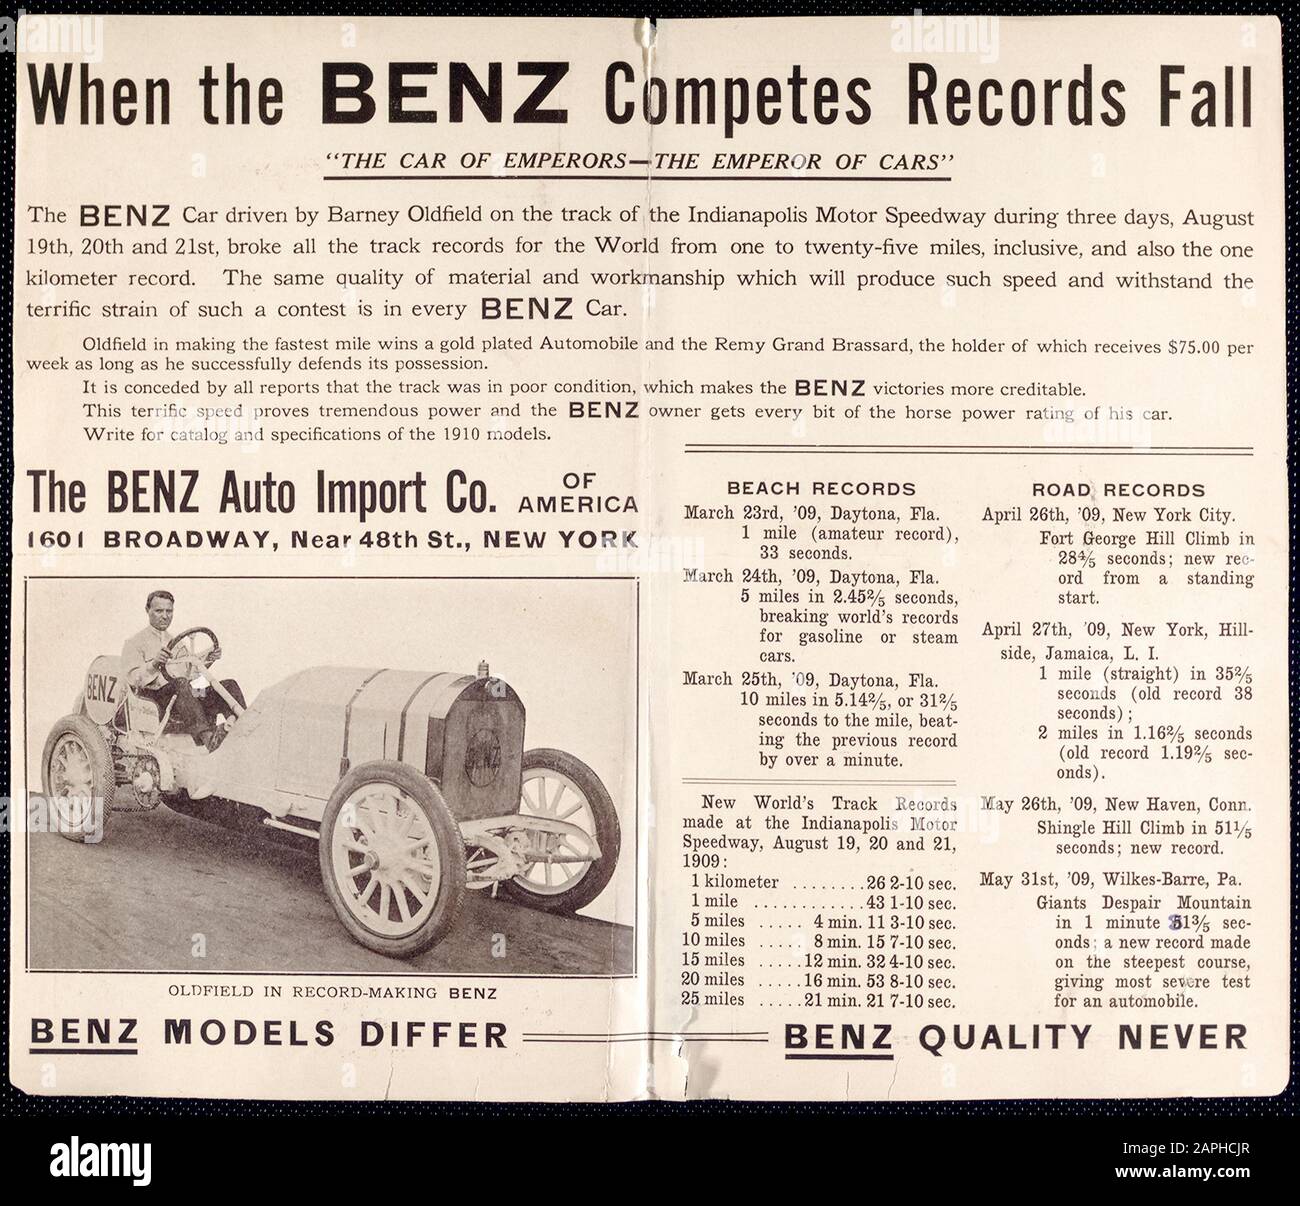 Auto d'epoca, il foglio pubblicitario di automobile di Benz, automobile di automobile, Quando il Benz compete la caduta dei record, l'automobile di Benz guidata da Barney Oldfield, Oldfield nella Benz di record, fotografia, 1909 Foto Stock